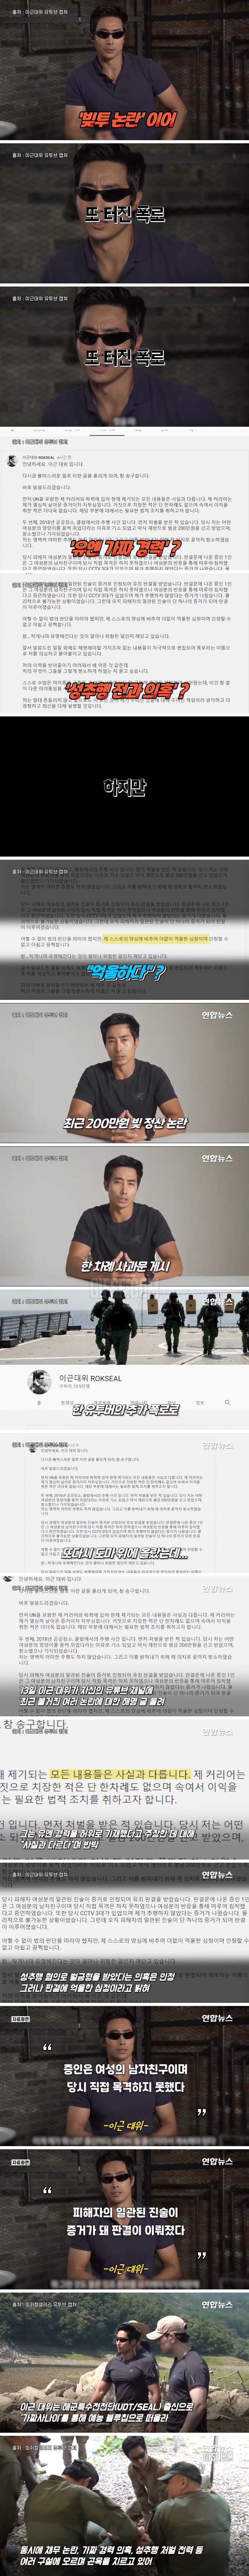 ',성범죄와 허위 경력', 의혹…이근 대위 진실 논란.jpg